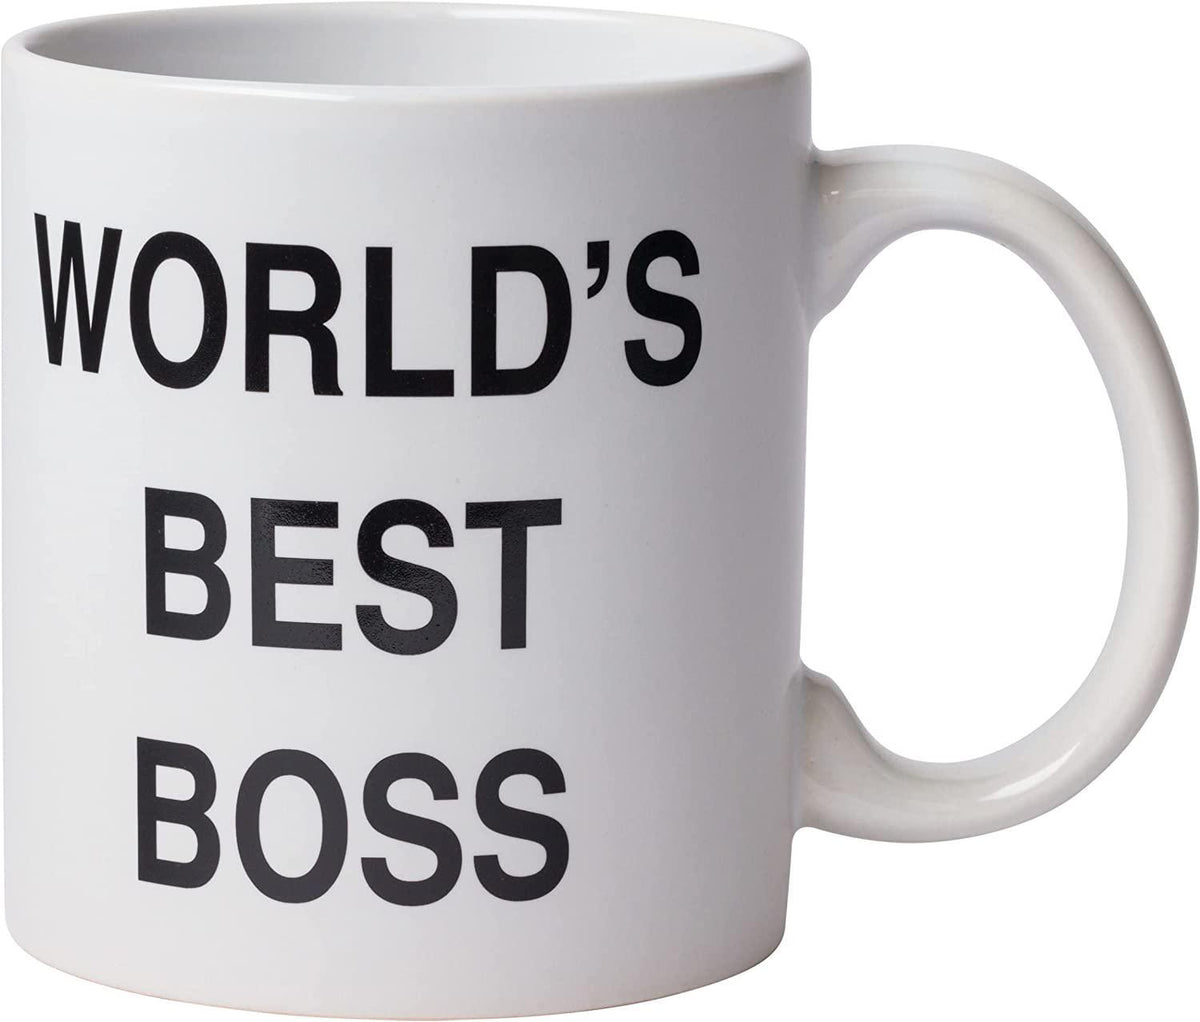 The Office World's Best Boss Ceramic Mug